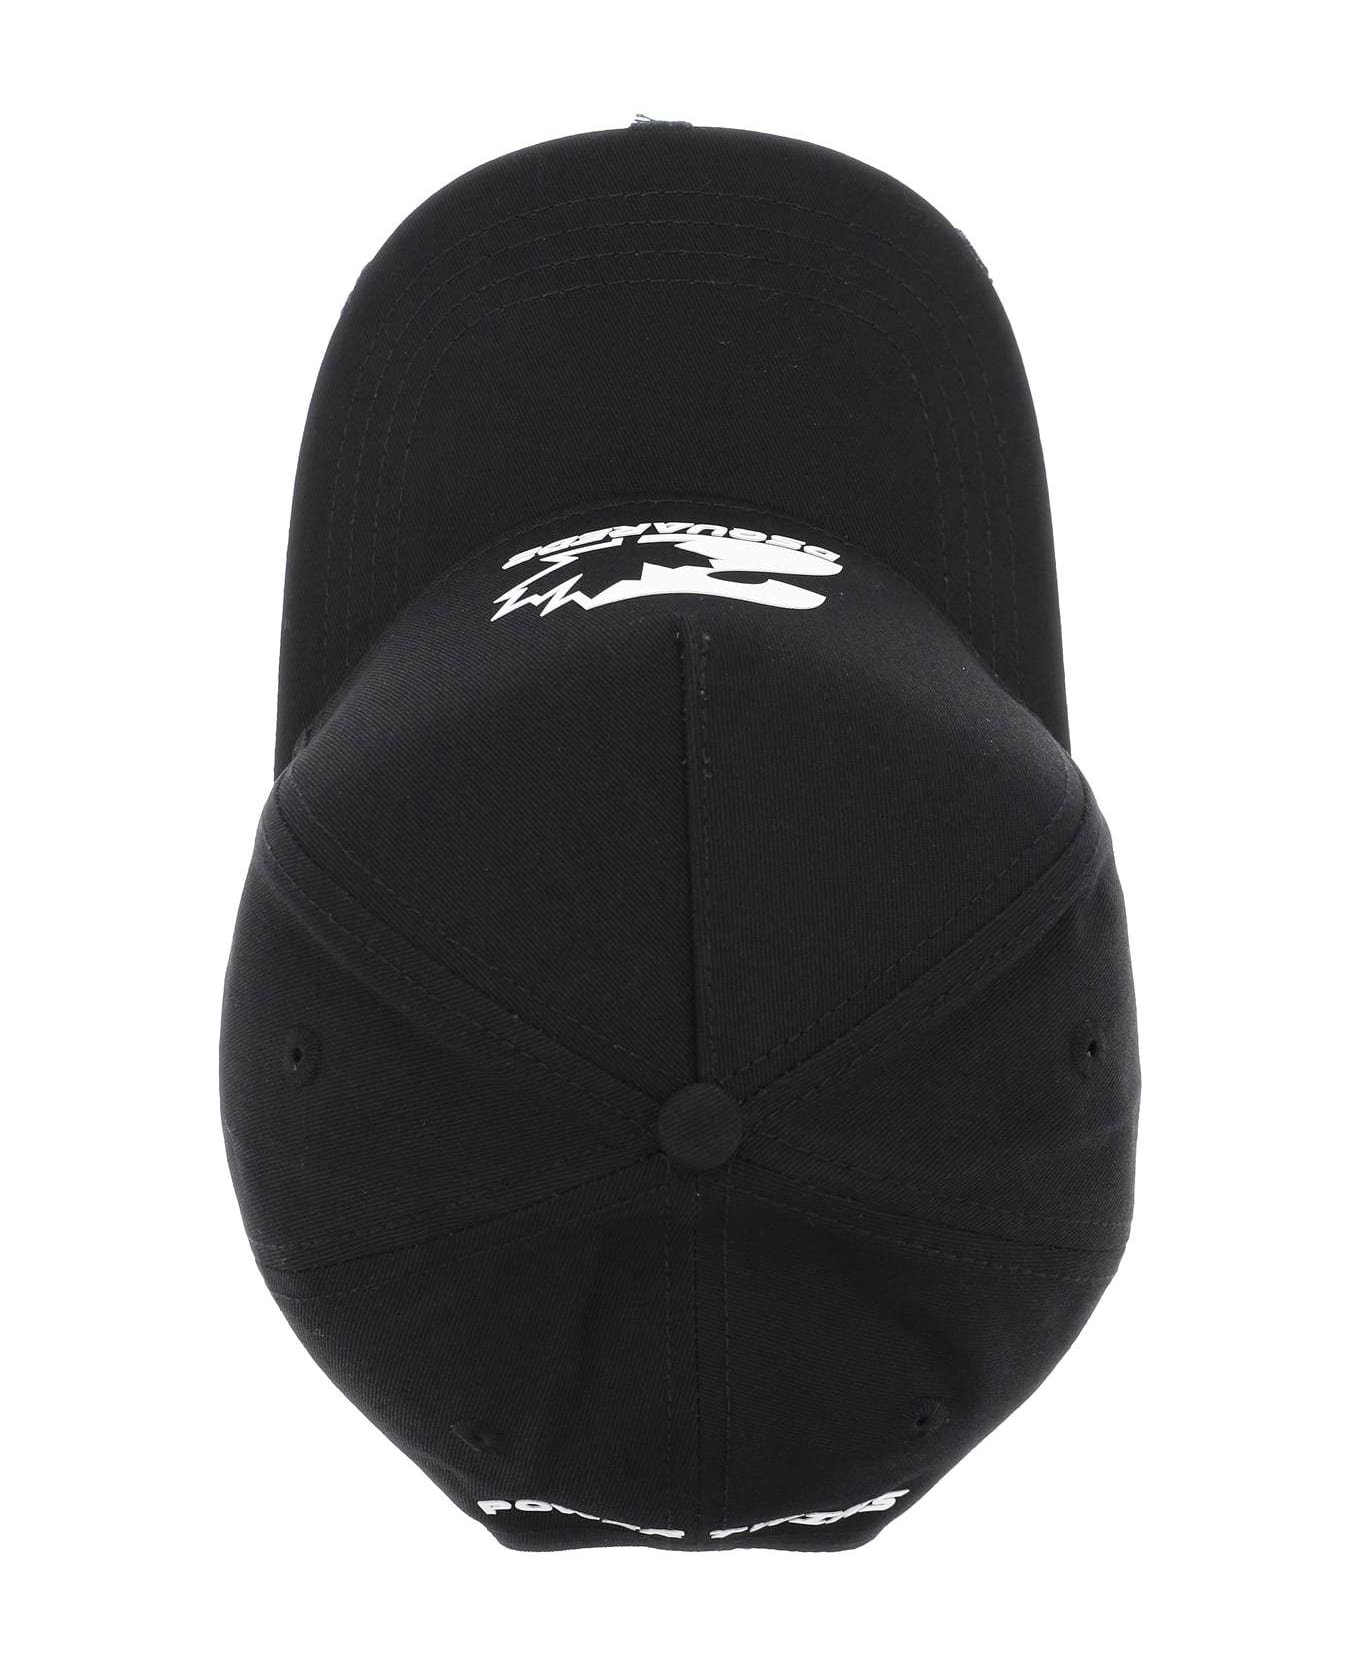 Dsquared2 Baseball Cap - BLACK WHITE (Black) 帽子